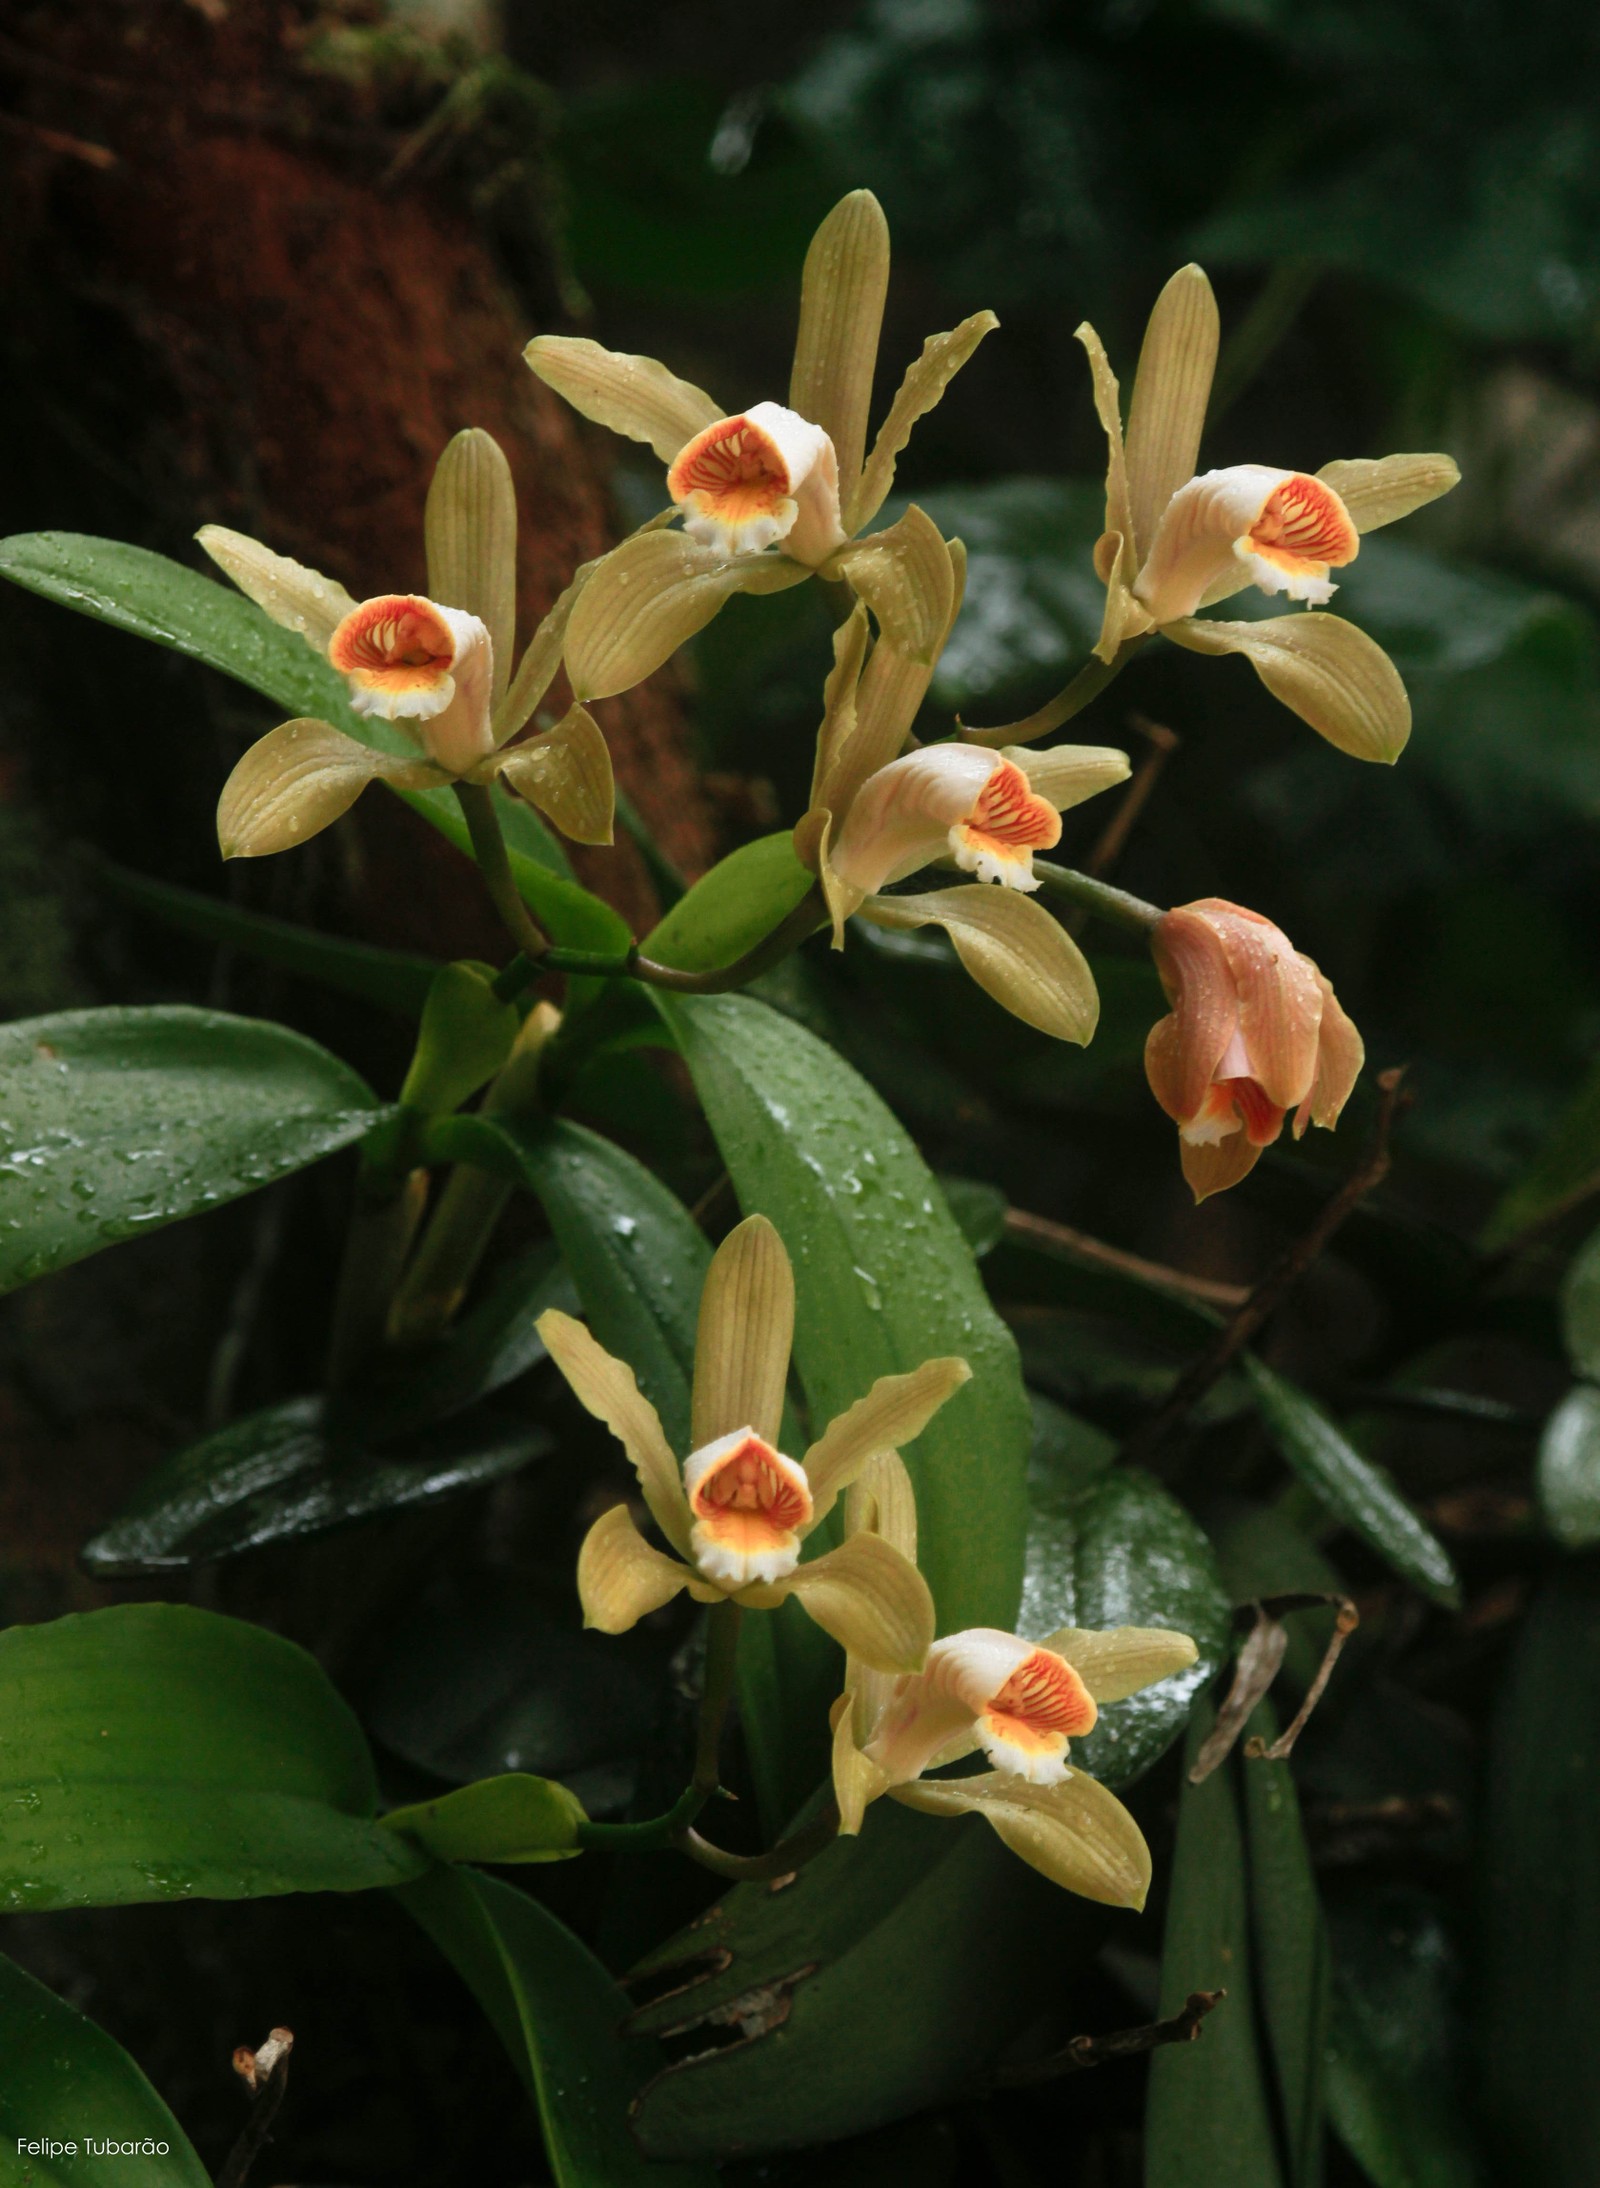 Cattleya forbesii, família Orchidaceae. Orquídea endêmica da Mata Atlântica - Foto de Felipe Tubarão